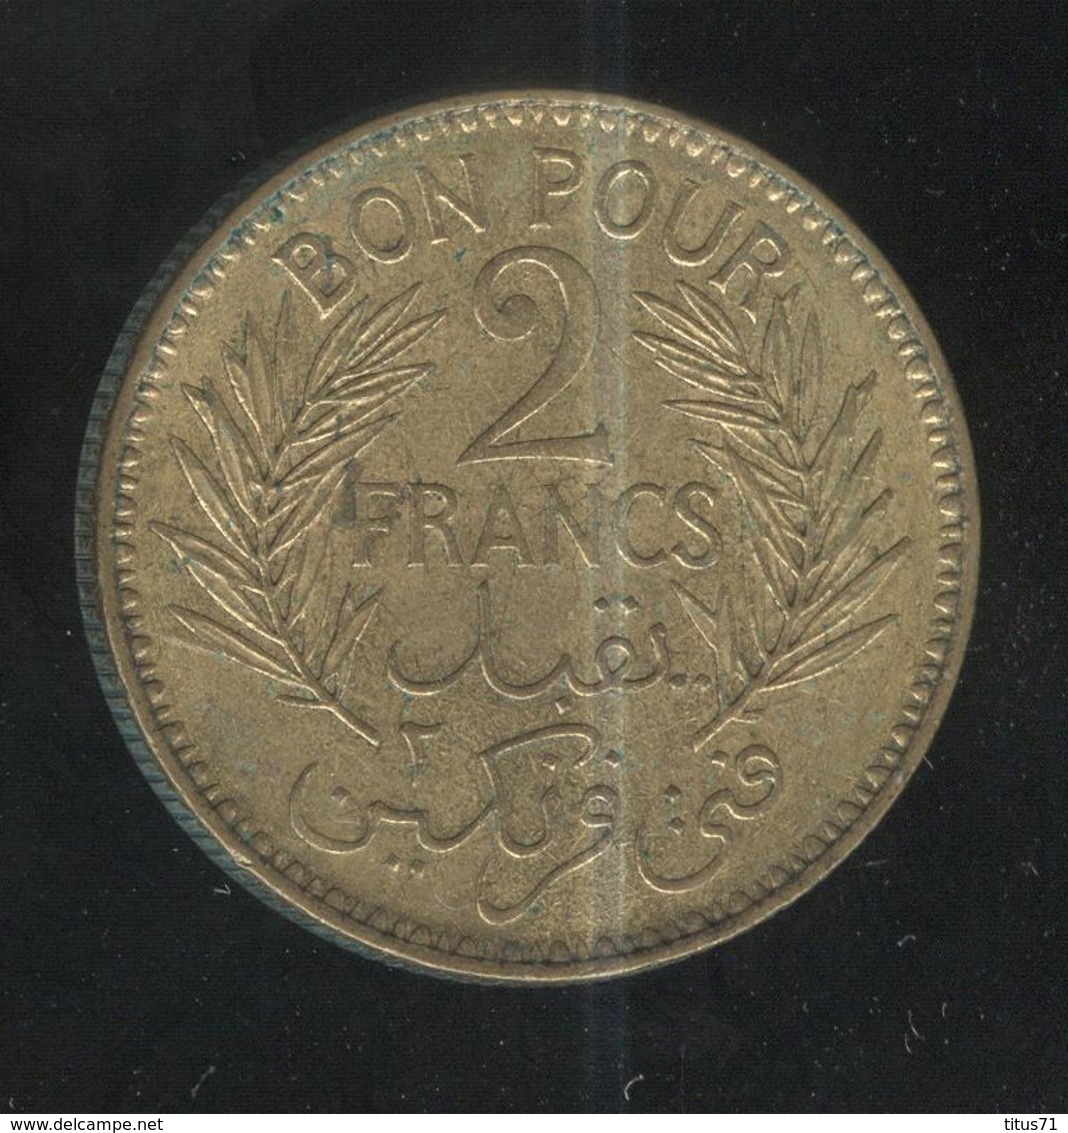 2 Francs Tunisie 1945 - Tunisie